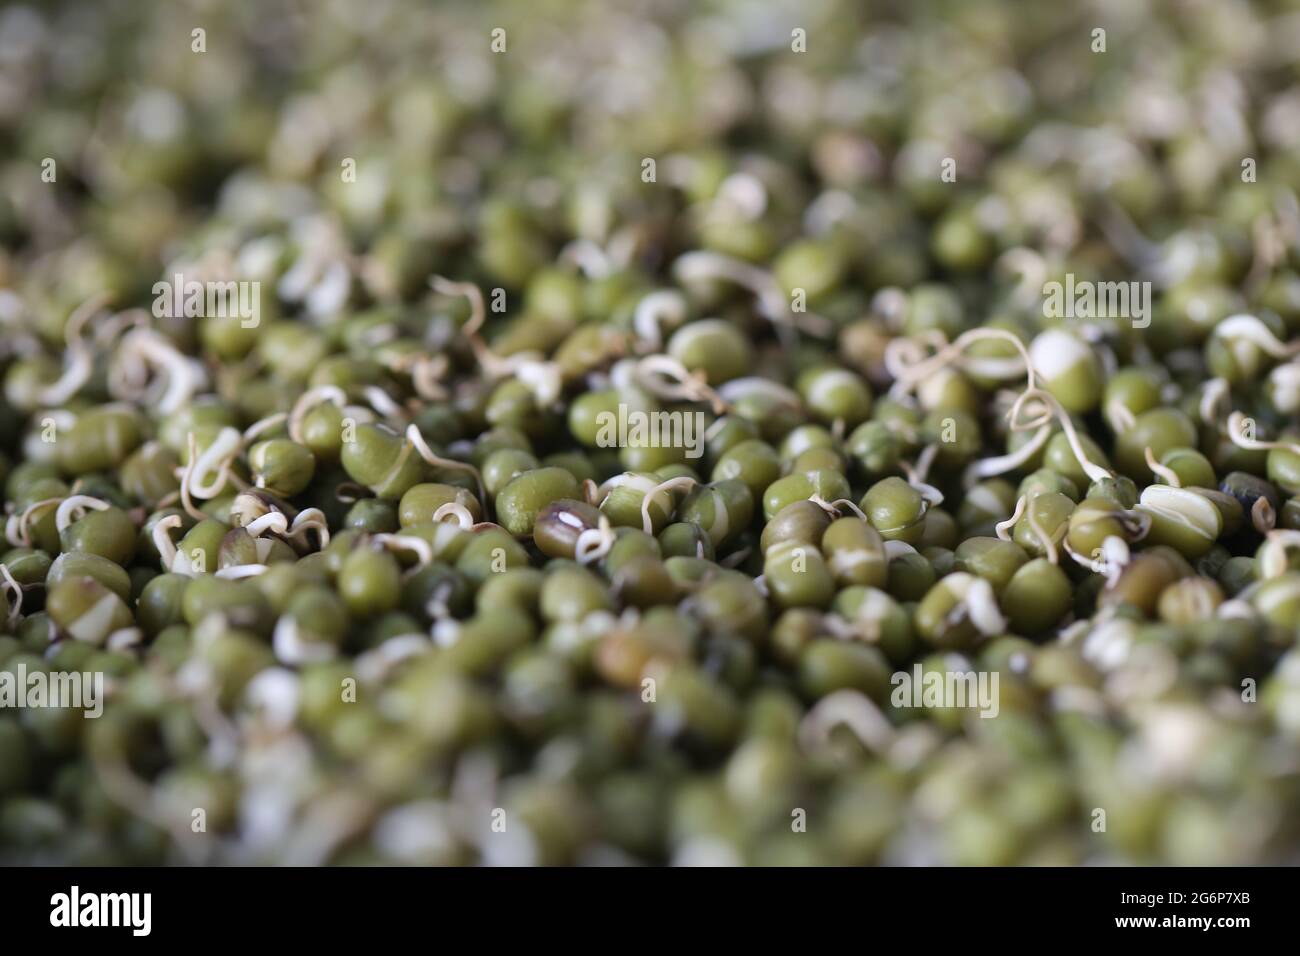 Primo piano di grammi verdi germogliati (moong) o maash. Il fagiolo mungo (Vigna radiata) è coltivato principalmente nell'Asia orientale, nel sud-est asiatico e nel sub indiano Foto Stock